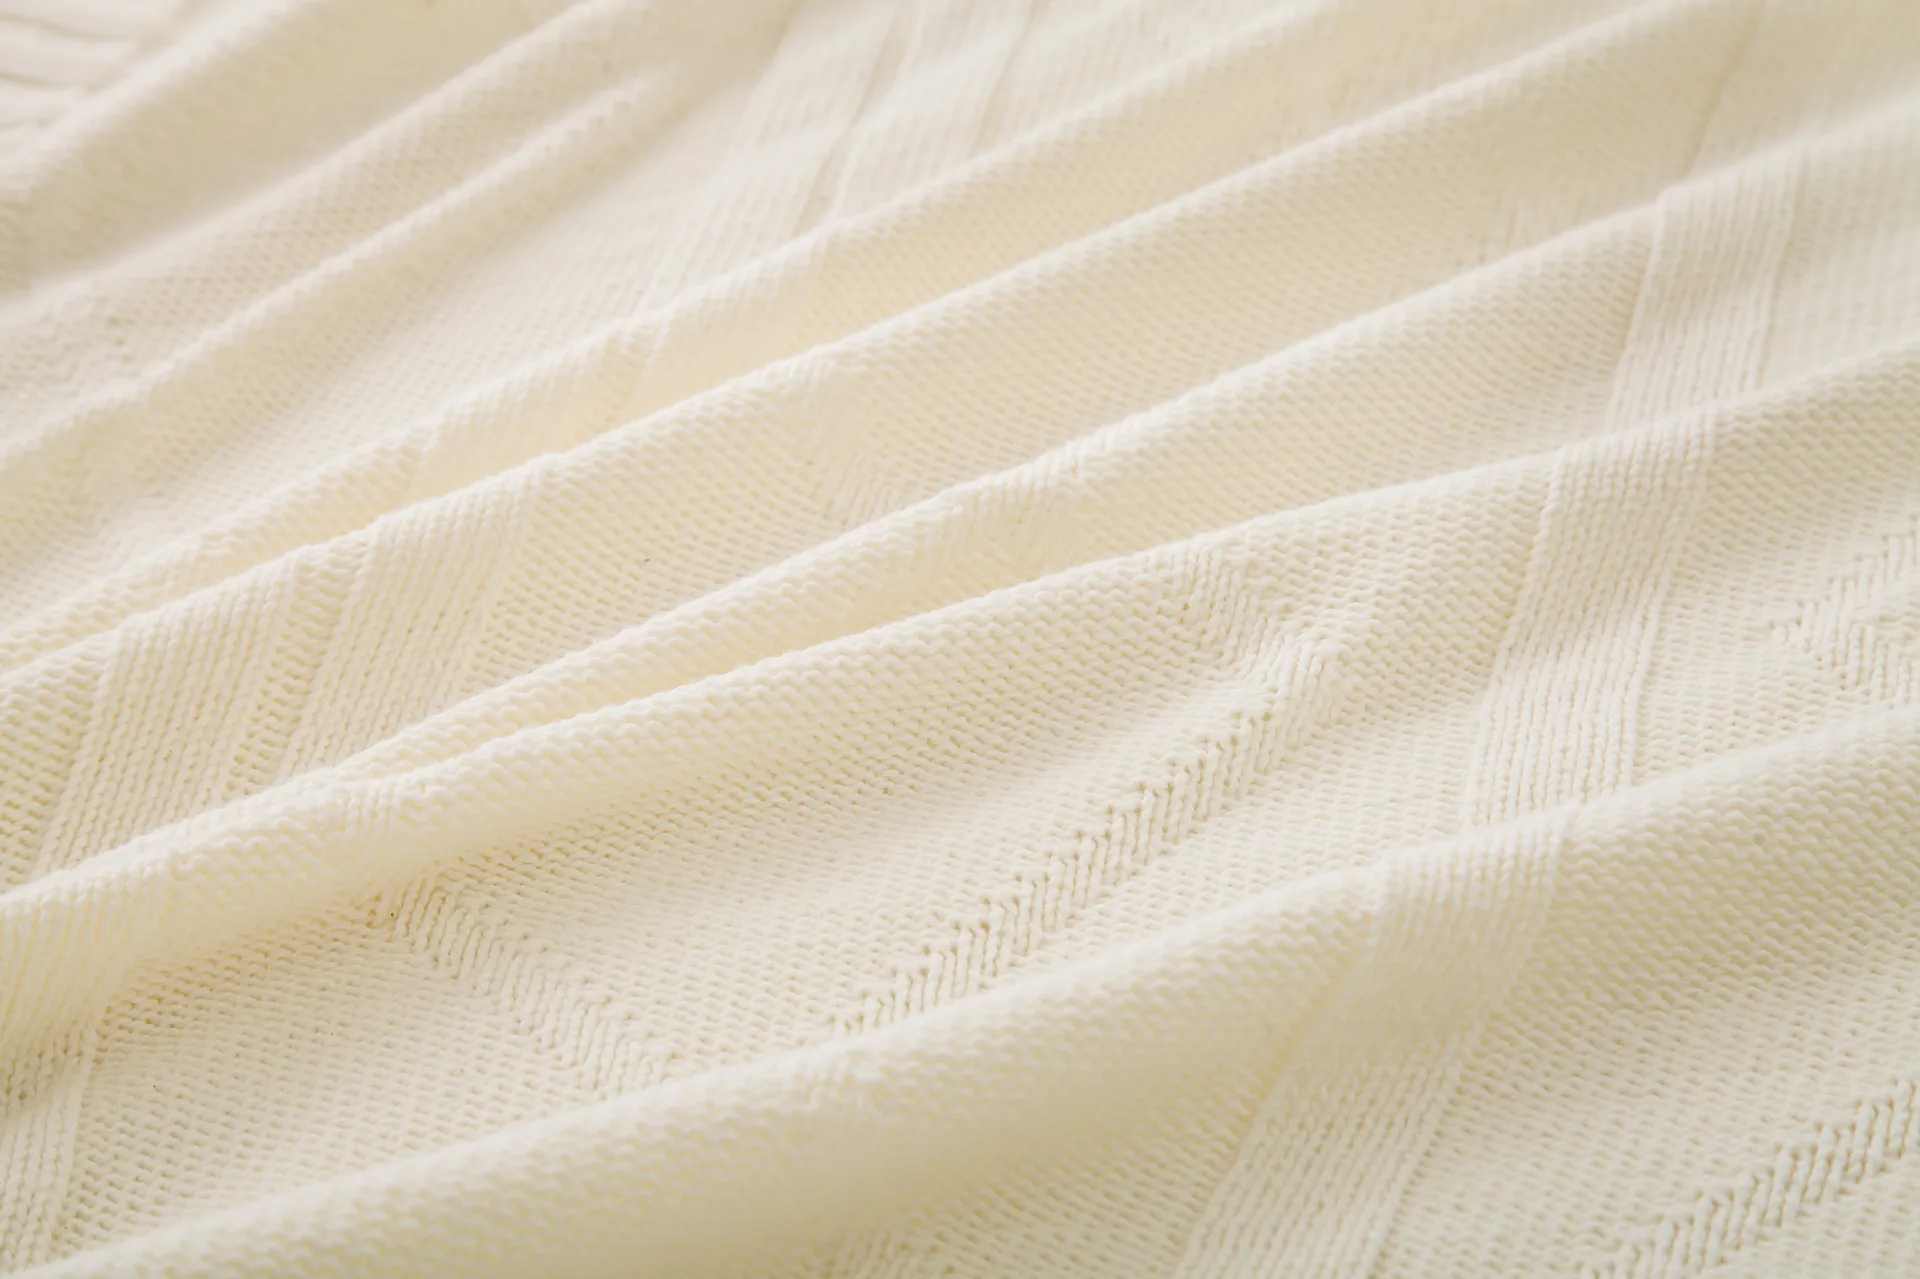 Coperta intrecciata Khaki Bianco-acrilico in cotone-acrilico Copriletto Home Tappeto Casa American Country Style Super Cozy Sofa Cover